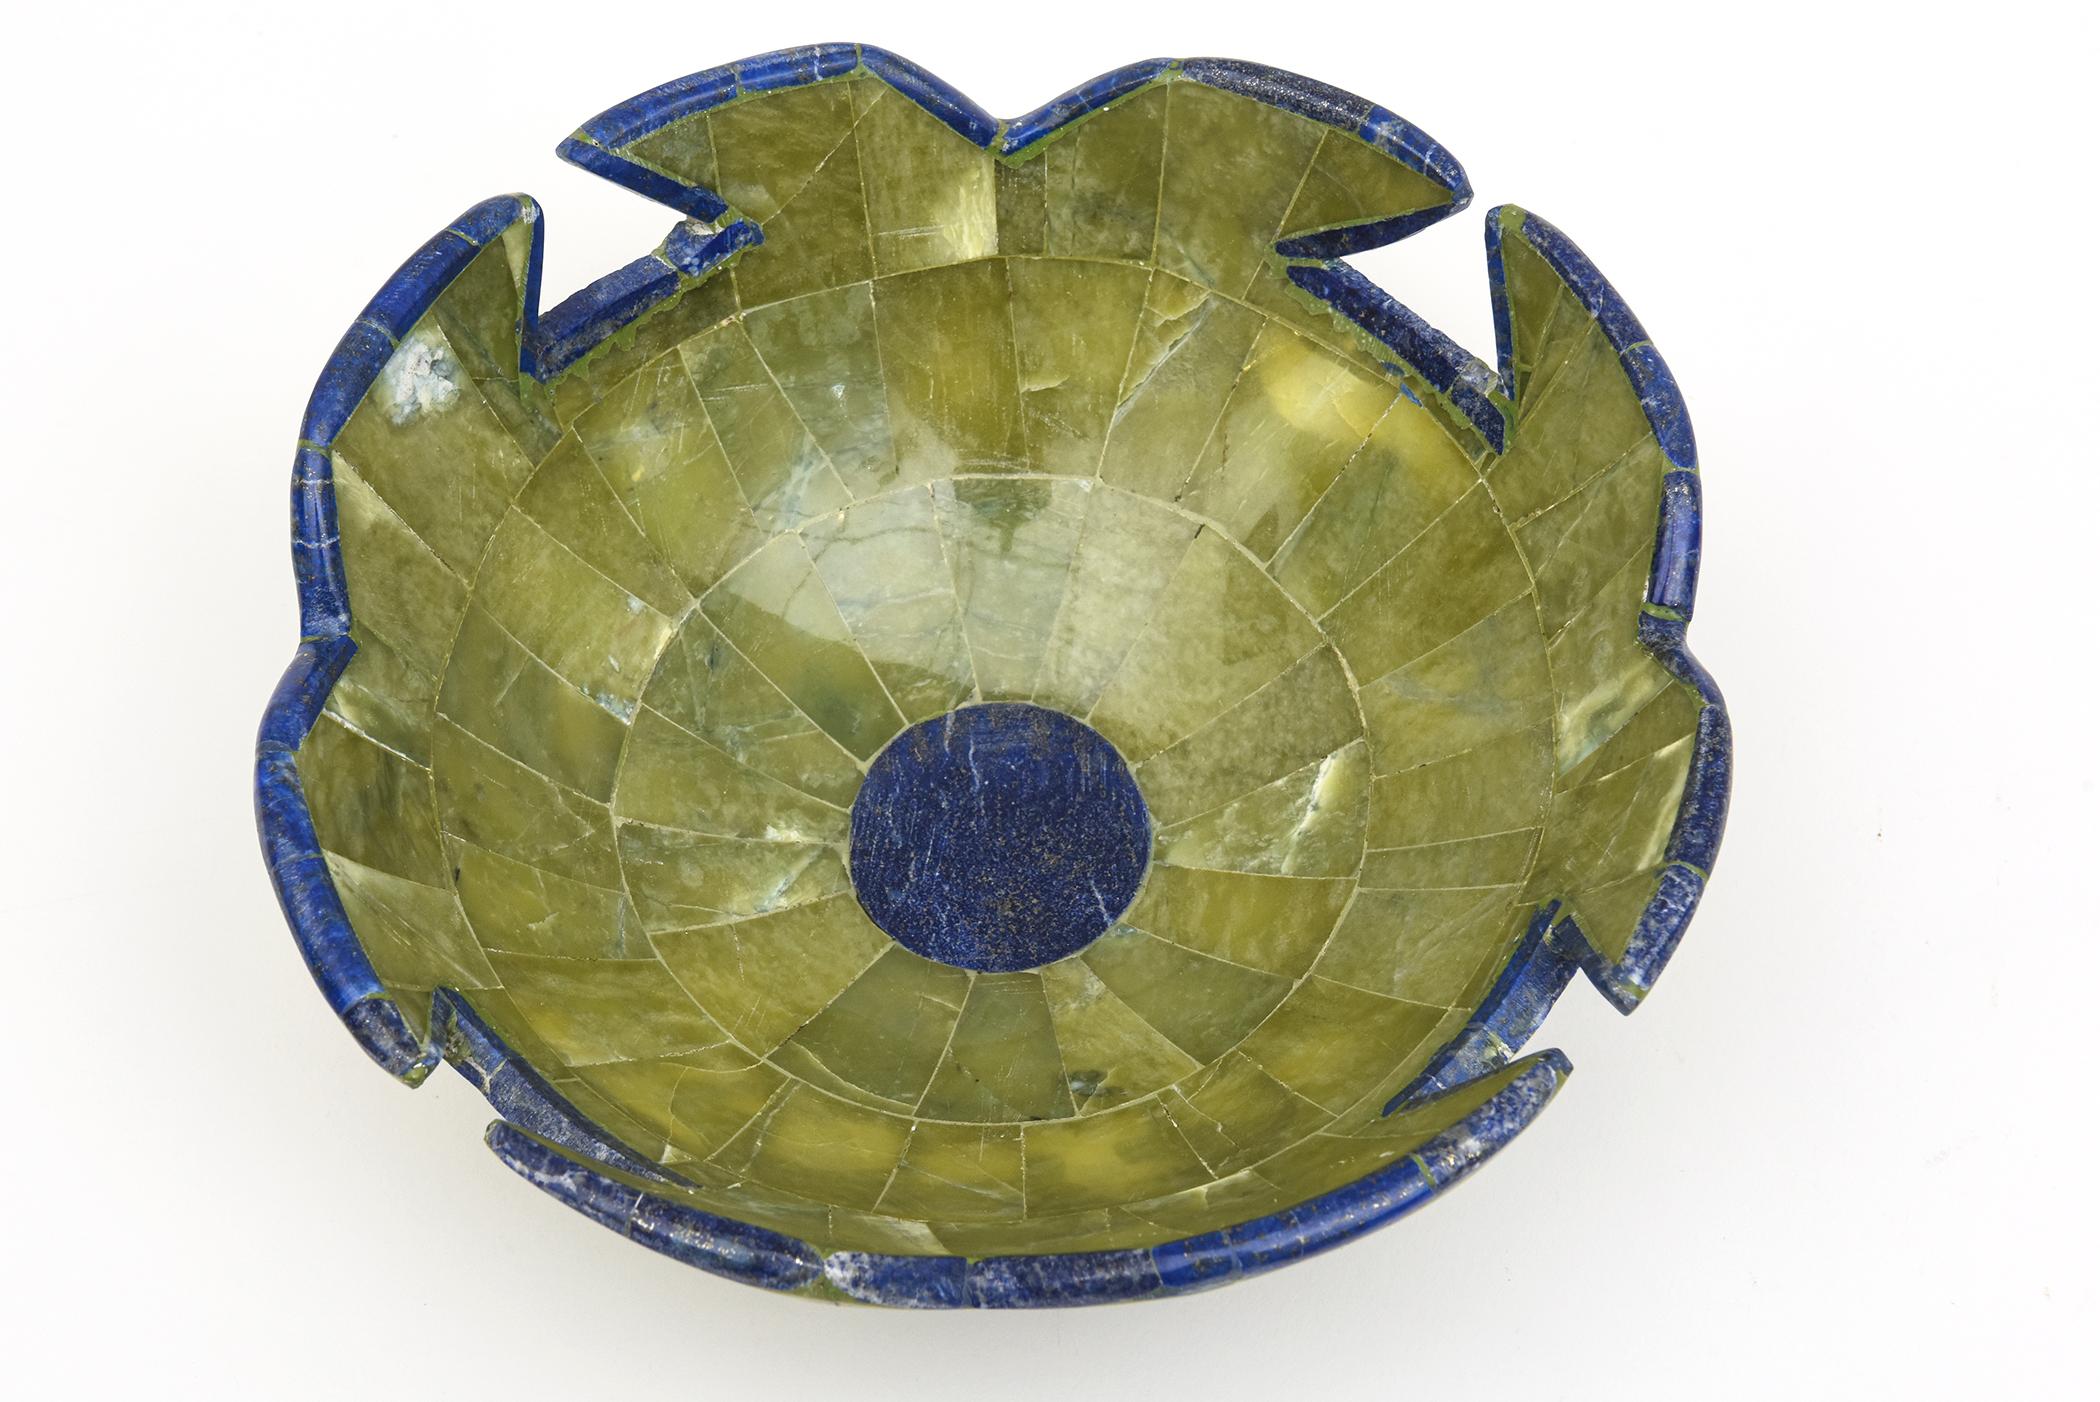 Die wunderschöne Kombination der Farben des geschnitzten grünen Steins mit dem Lapislazuli-Blau in dieser Schale mit Wellenschliff ist ein echter Knaller! Aus den 1980er Jahren. Ideal als dekorative Schale, Schreibtisch-Accessoire oder zum